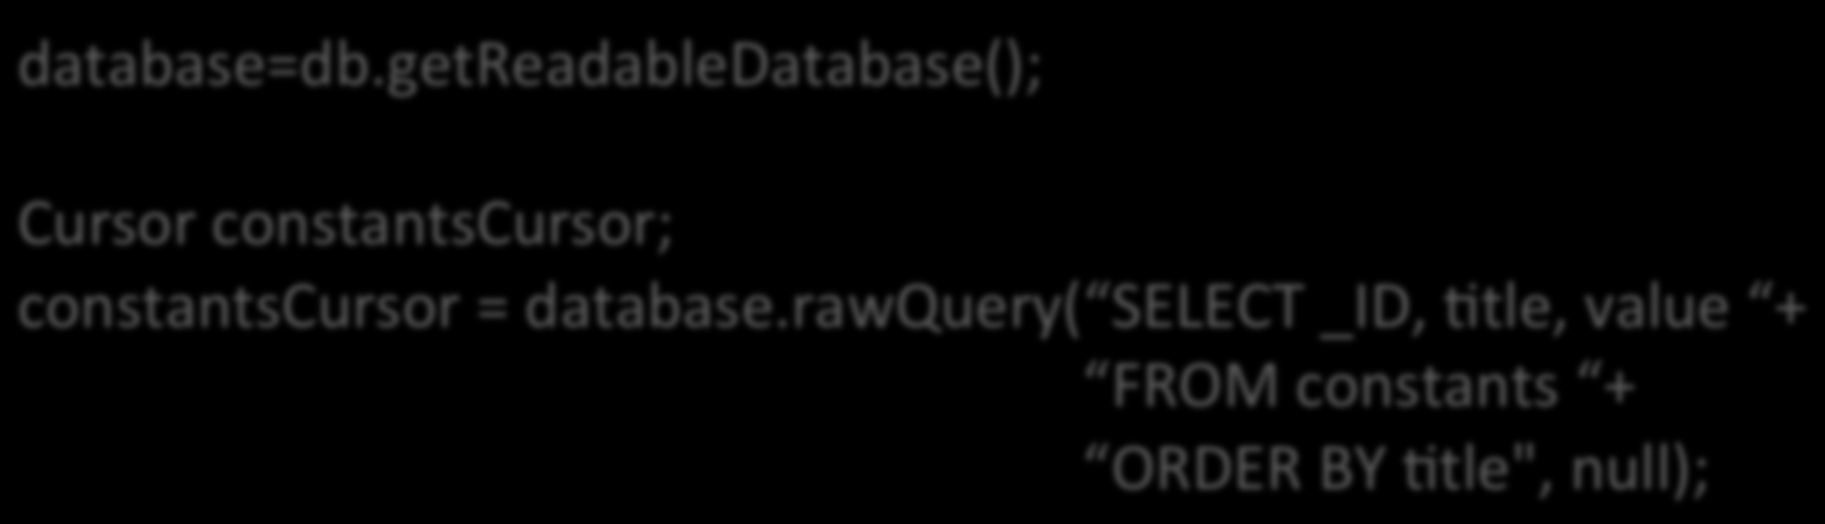 UAlizando o método rawquery() Informando a consulta SQL completa: database=db.